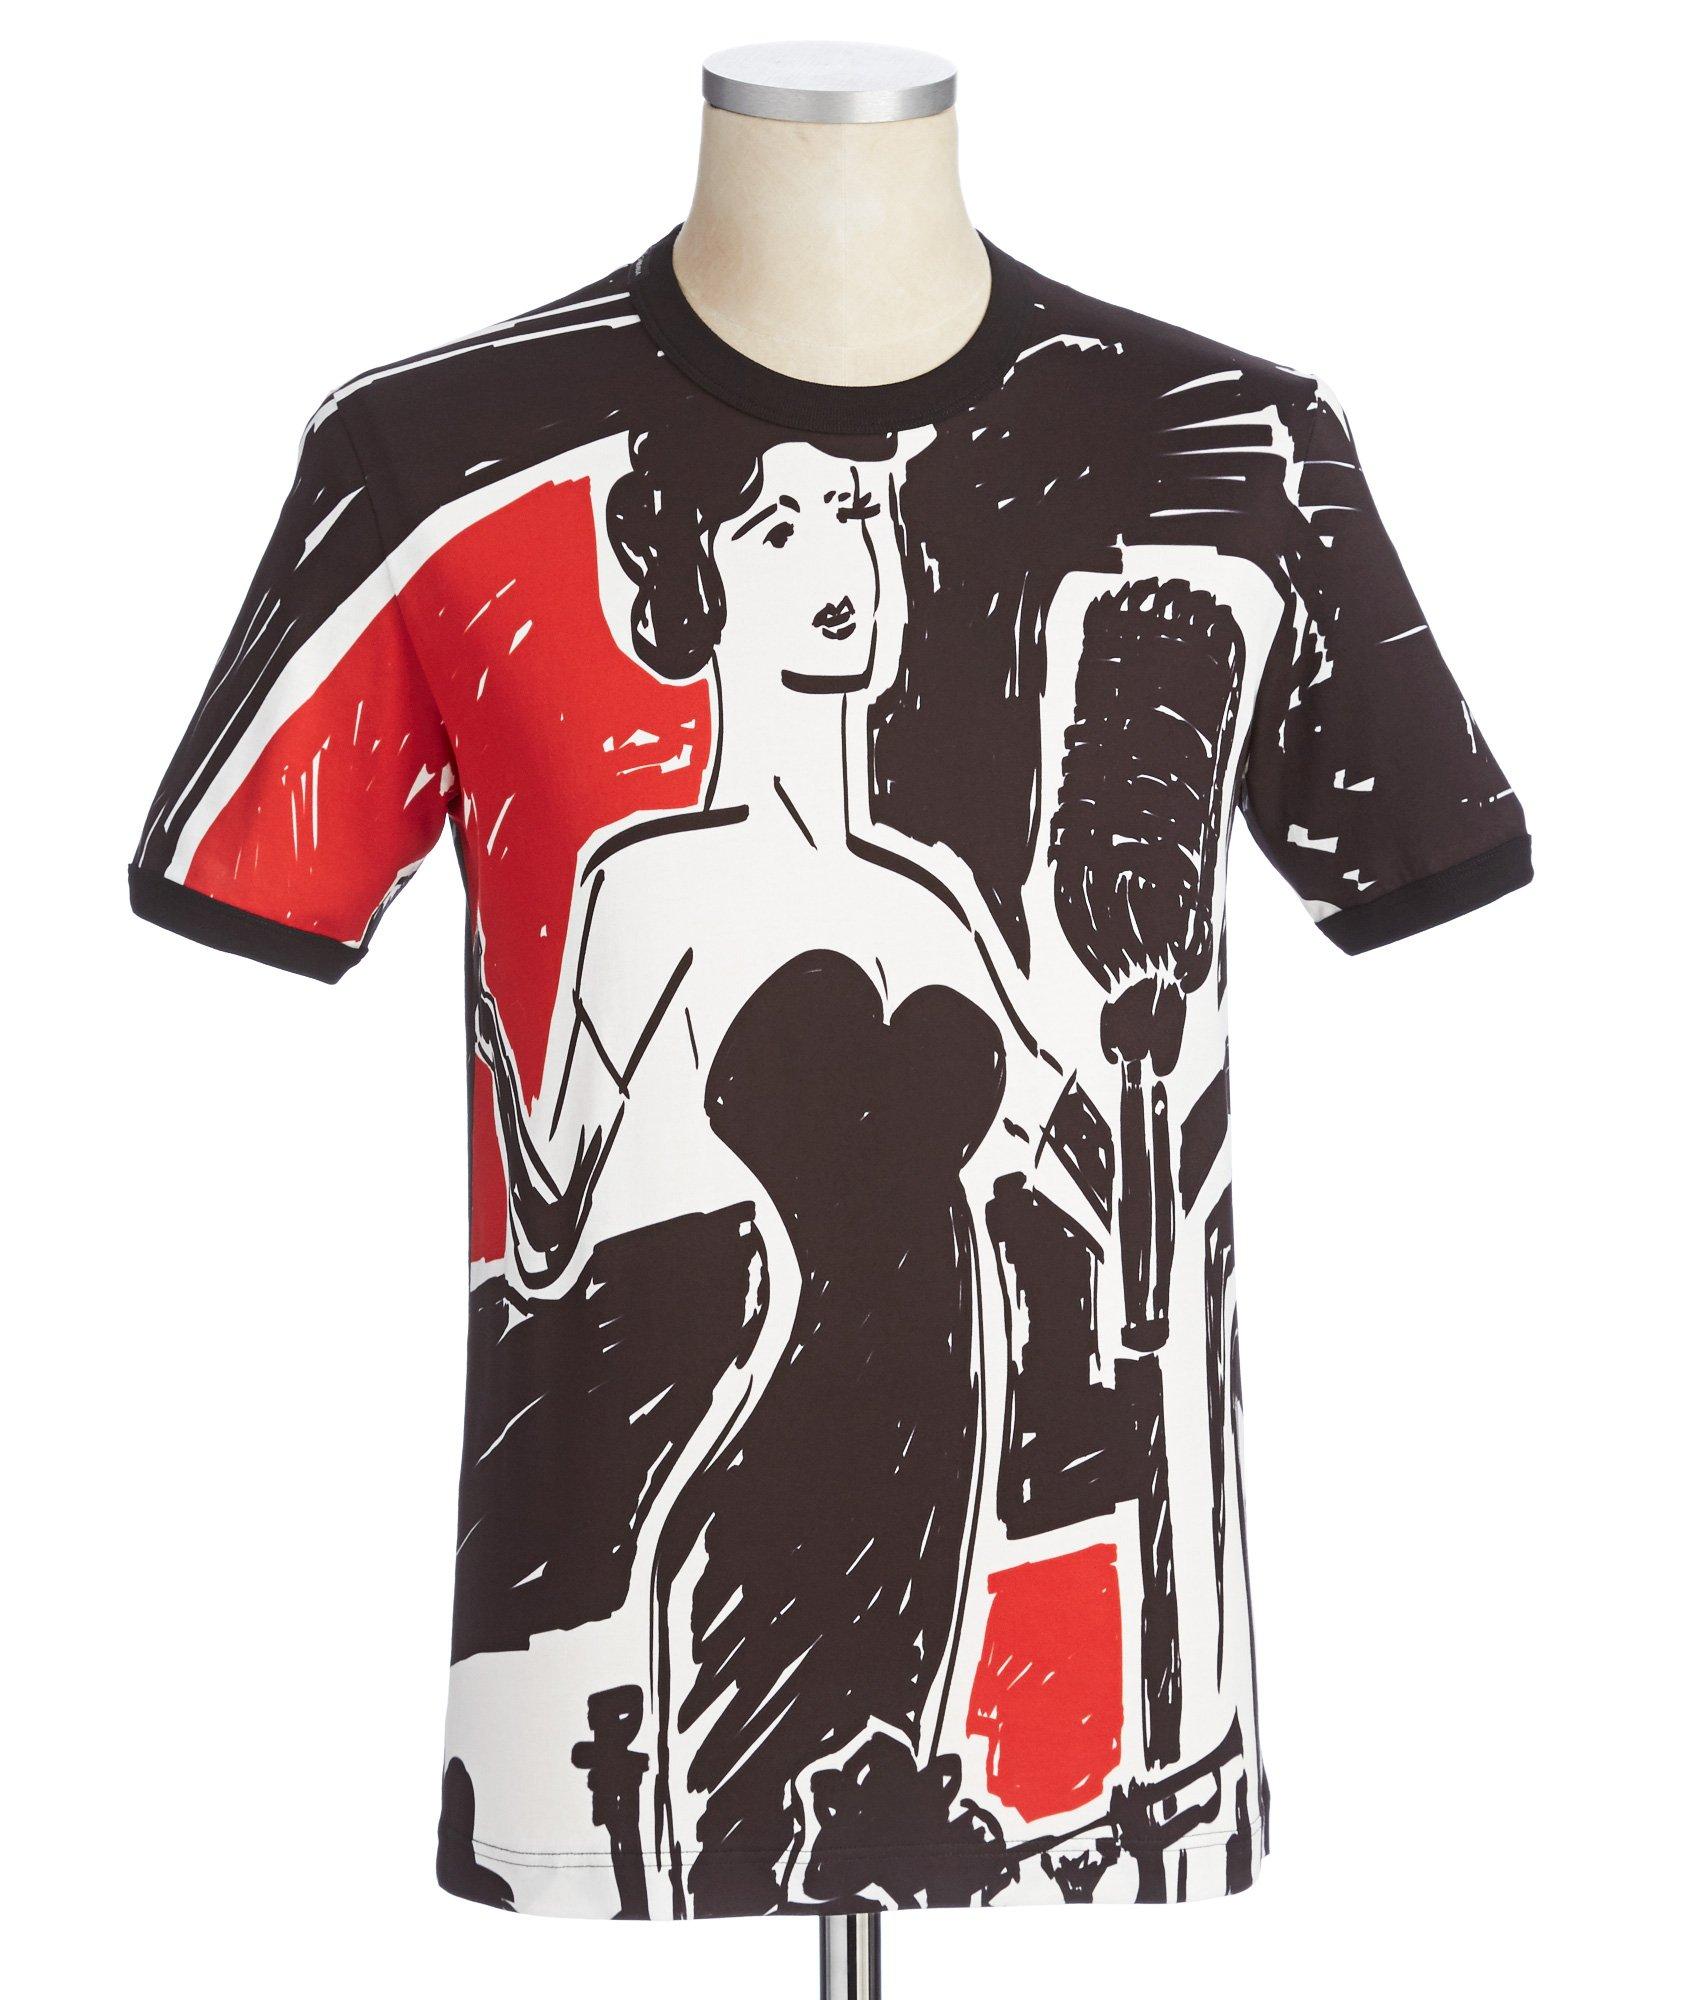 T-shirt à motif inspiré du jazz image 0